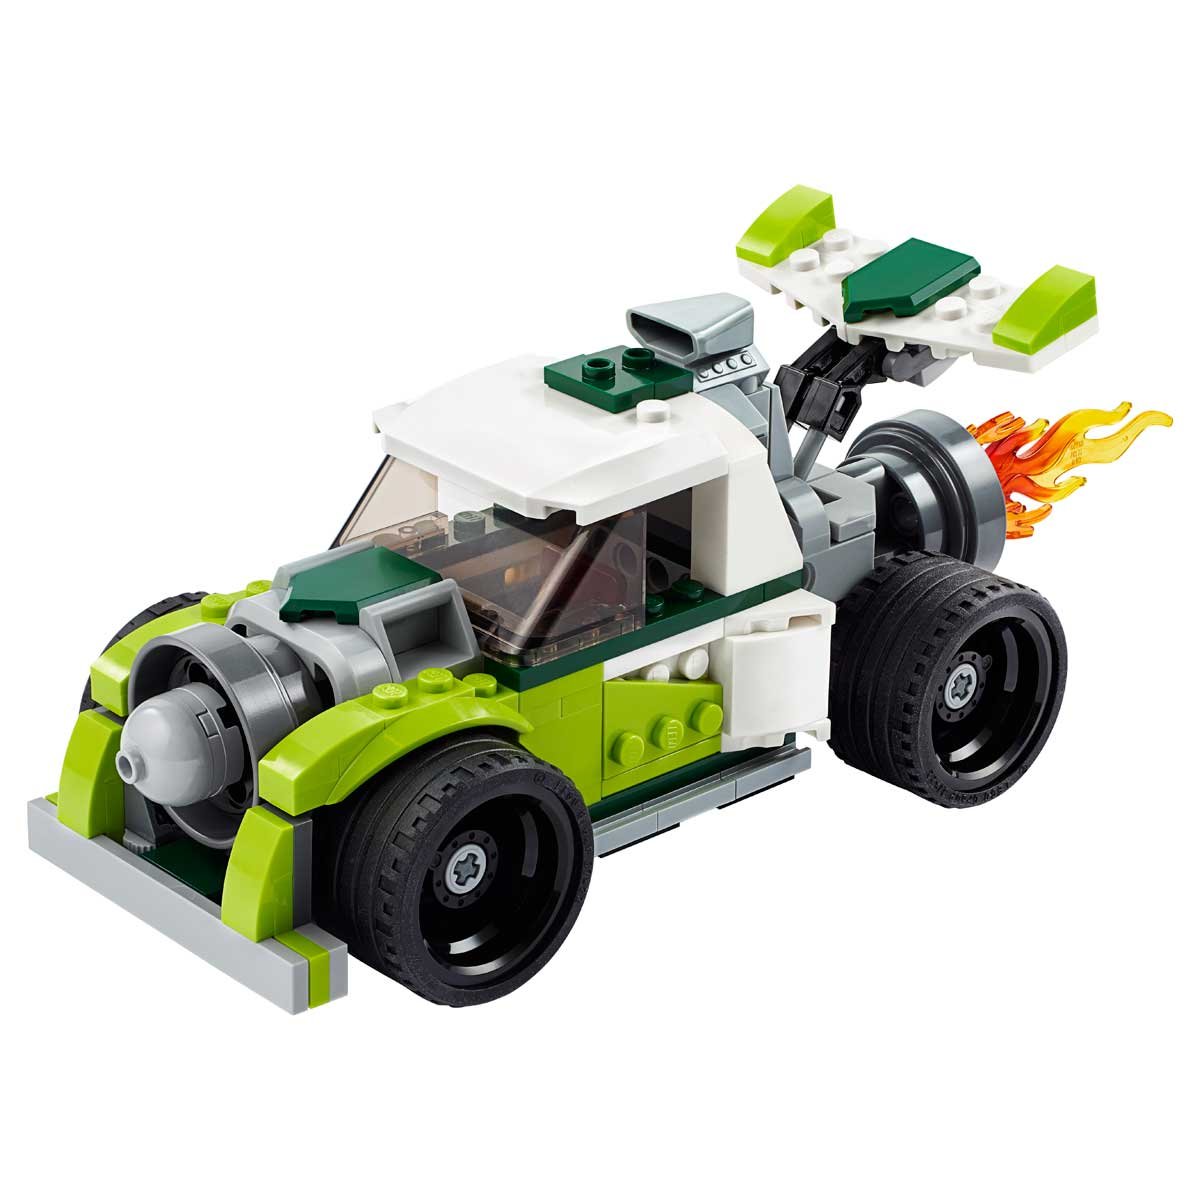 Camión Jet Lego Creator